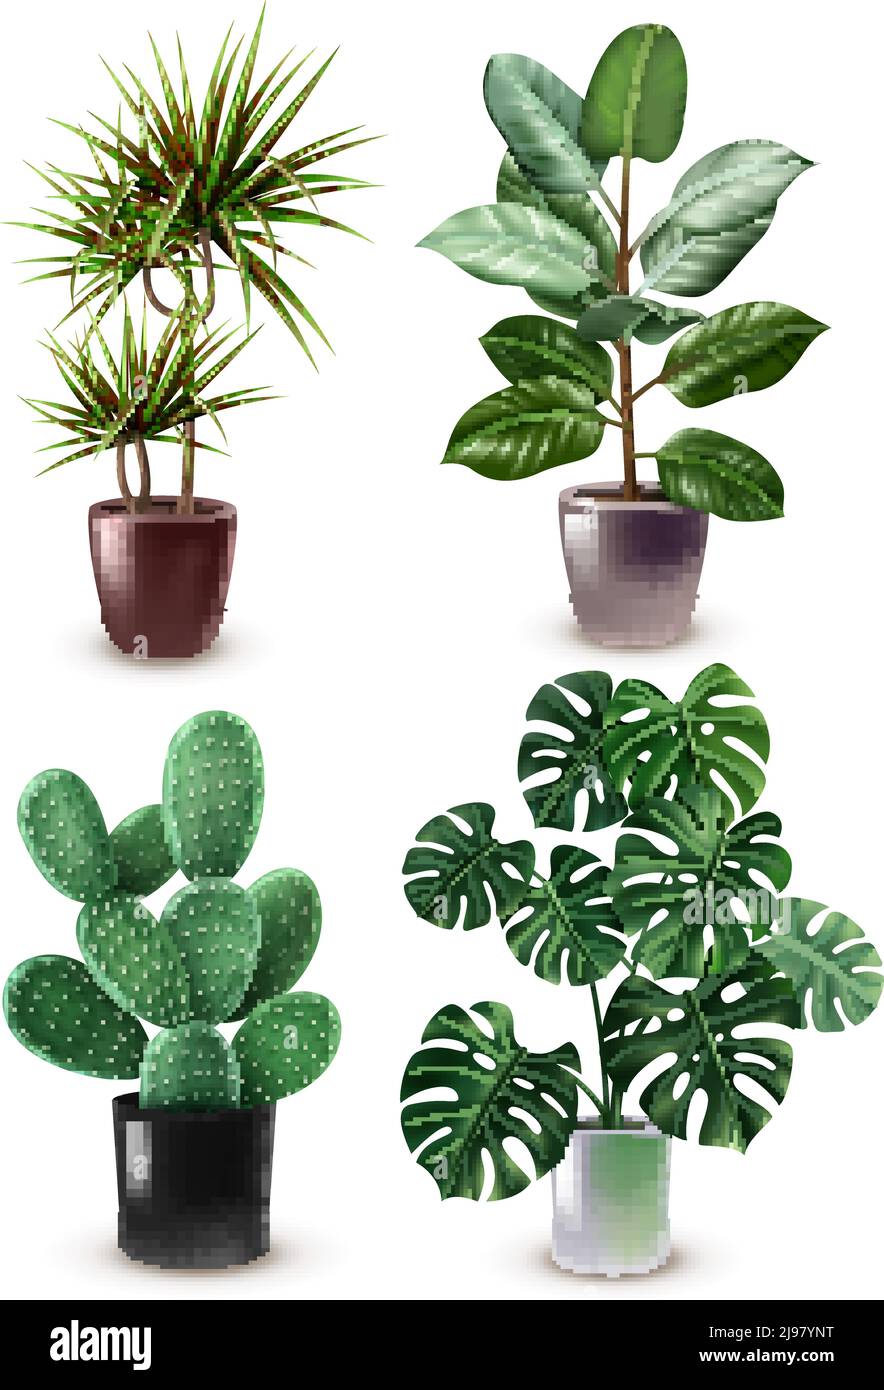 Isolierte realistische Zimmerpflanze Symbol setzen verschiedene Arten von  Pflanzen in Elegante Vektorgrafik für Töpfe Stock-Vektorgrafik - Alamy